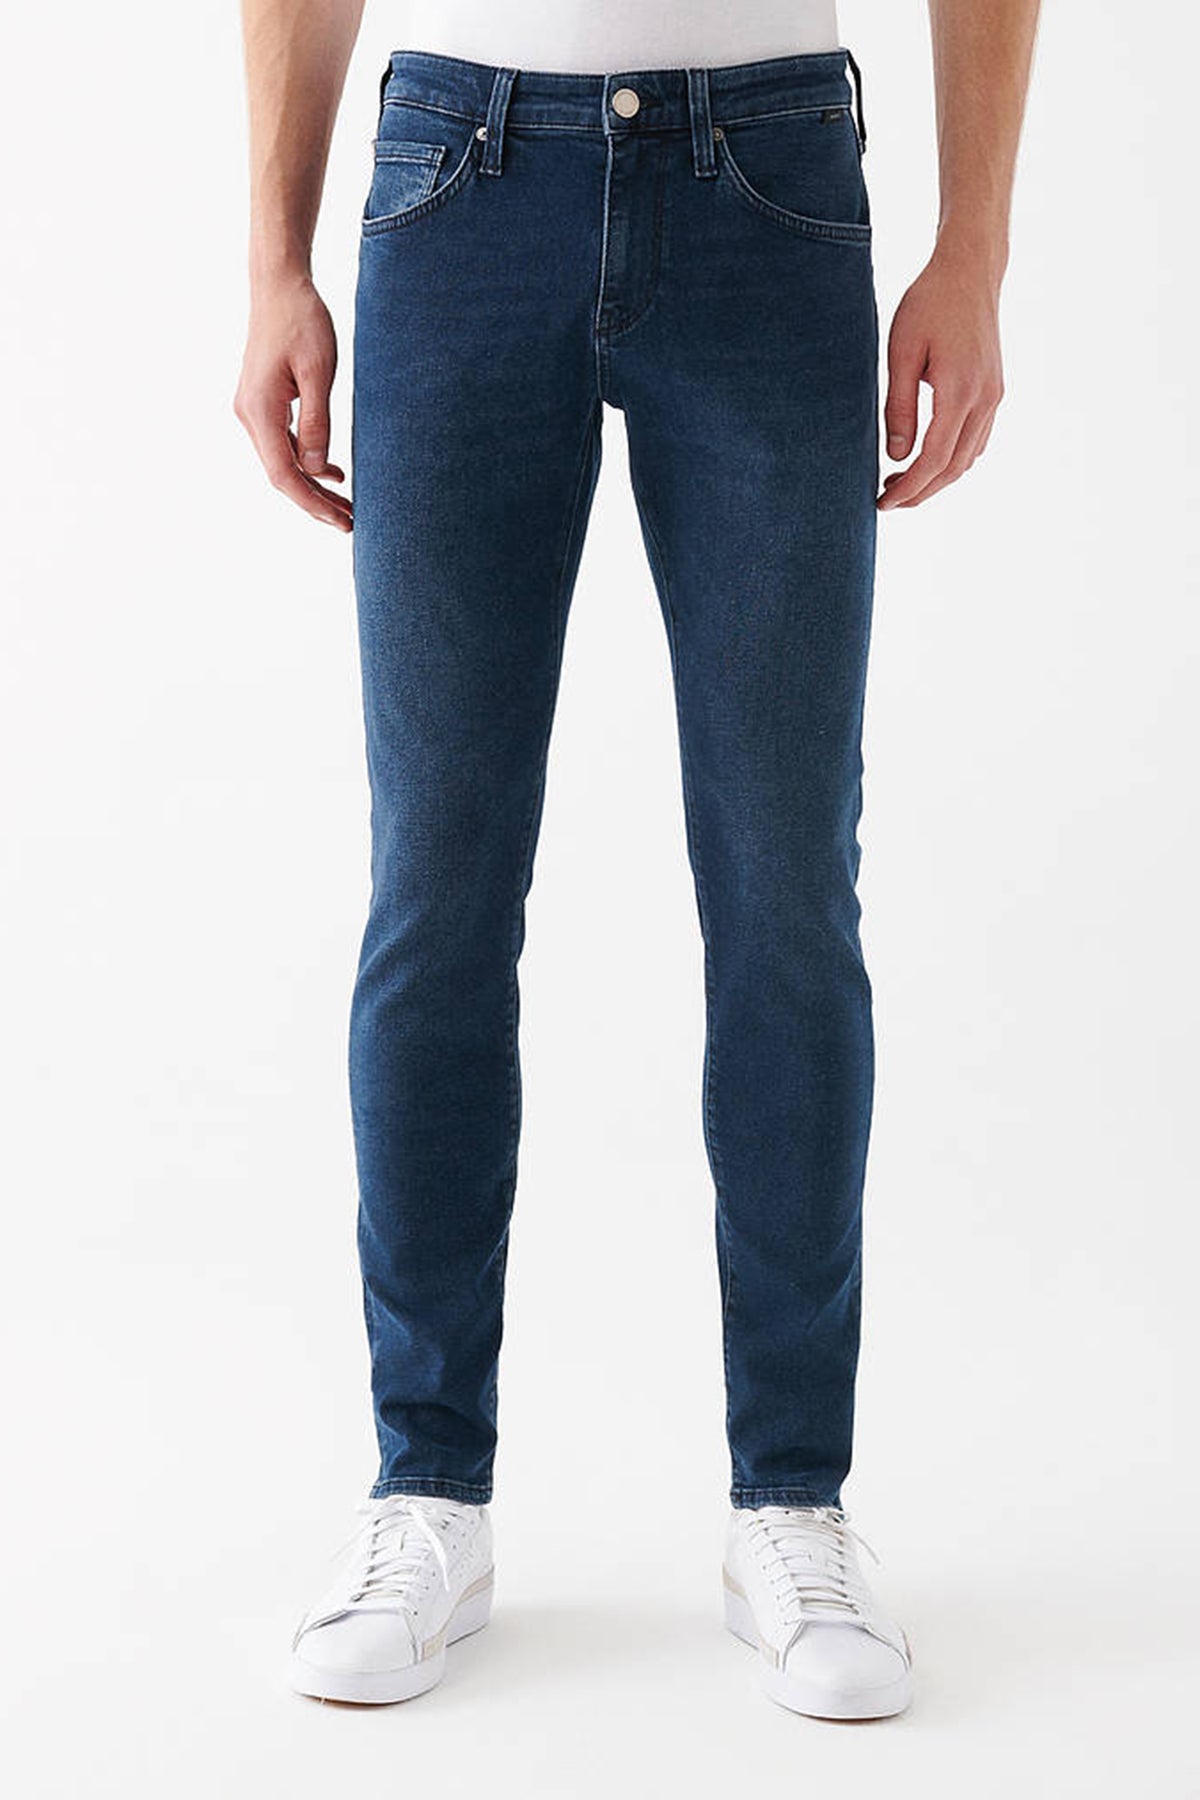 Mavi Kvnç Pamuklu Skinny Normal Bel Dar Paça Jeans Erkek Kot Pantolon 001070-34807 LACİVERT